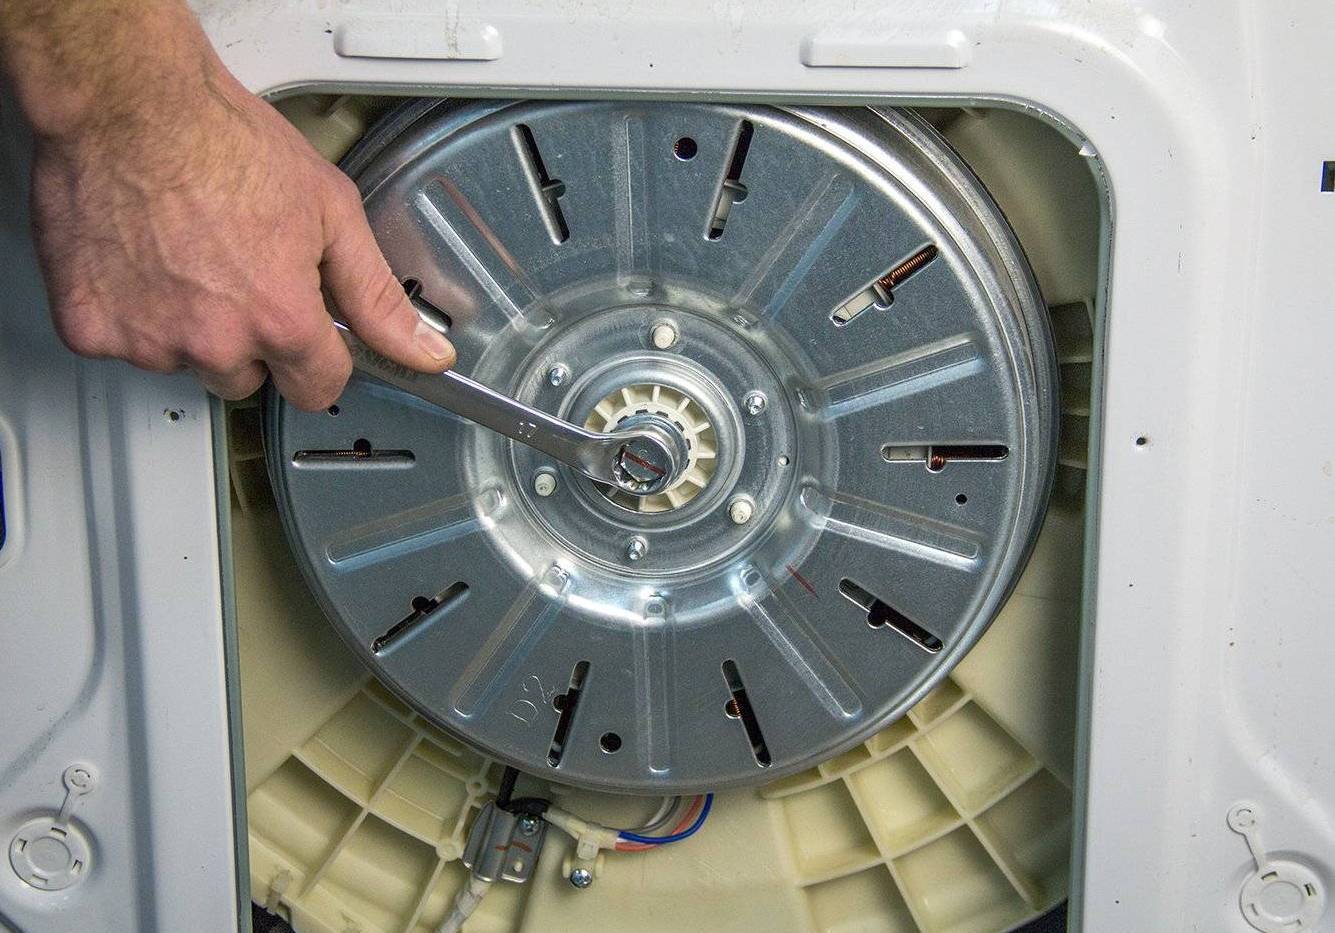 Не крутится барабан стиральной машины: возможные причины при стирке в машинке indesit, samsung, lg, bosch, beko, zanussi, electrolux, ariston, ardo